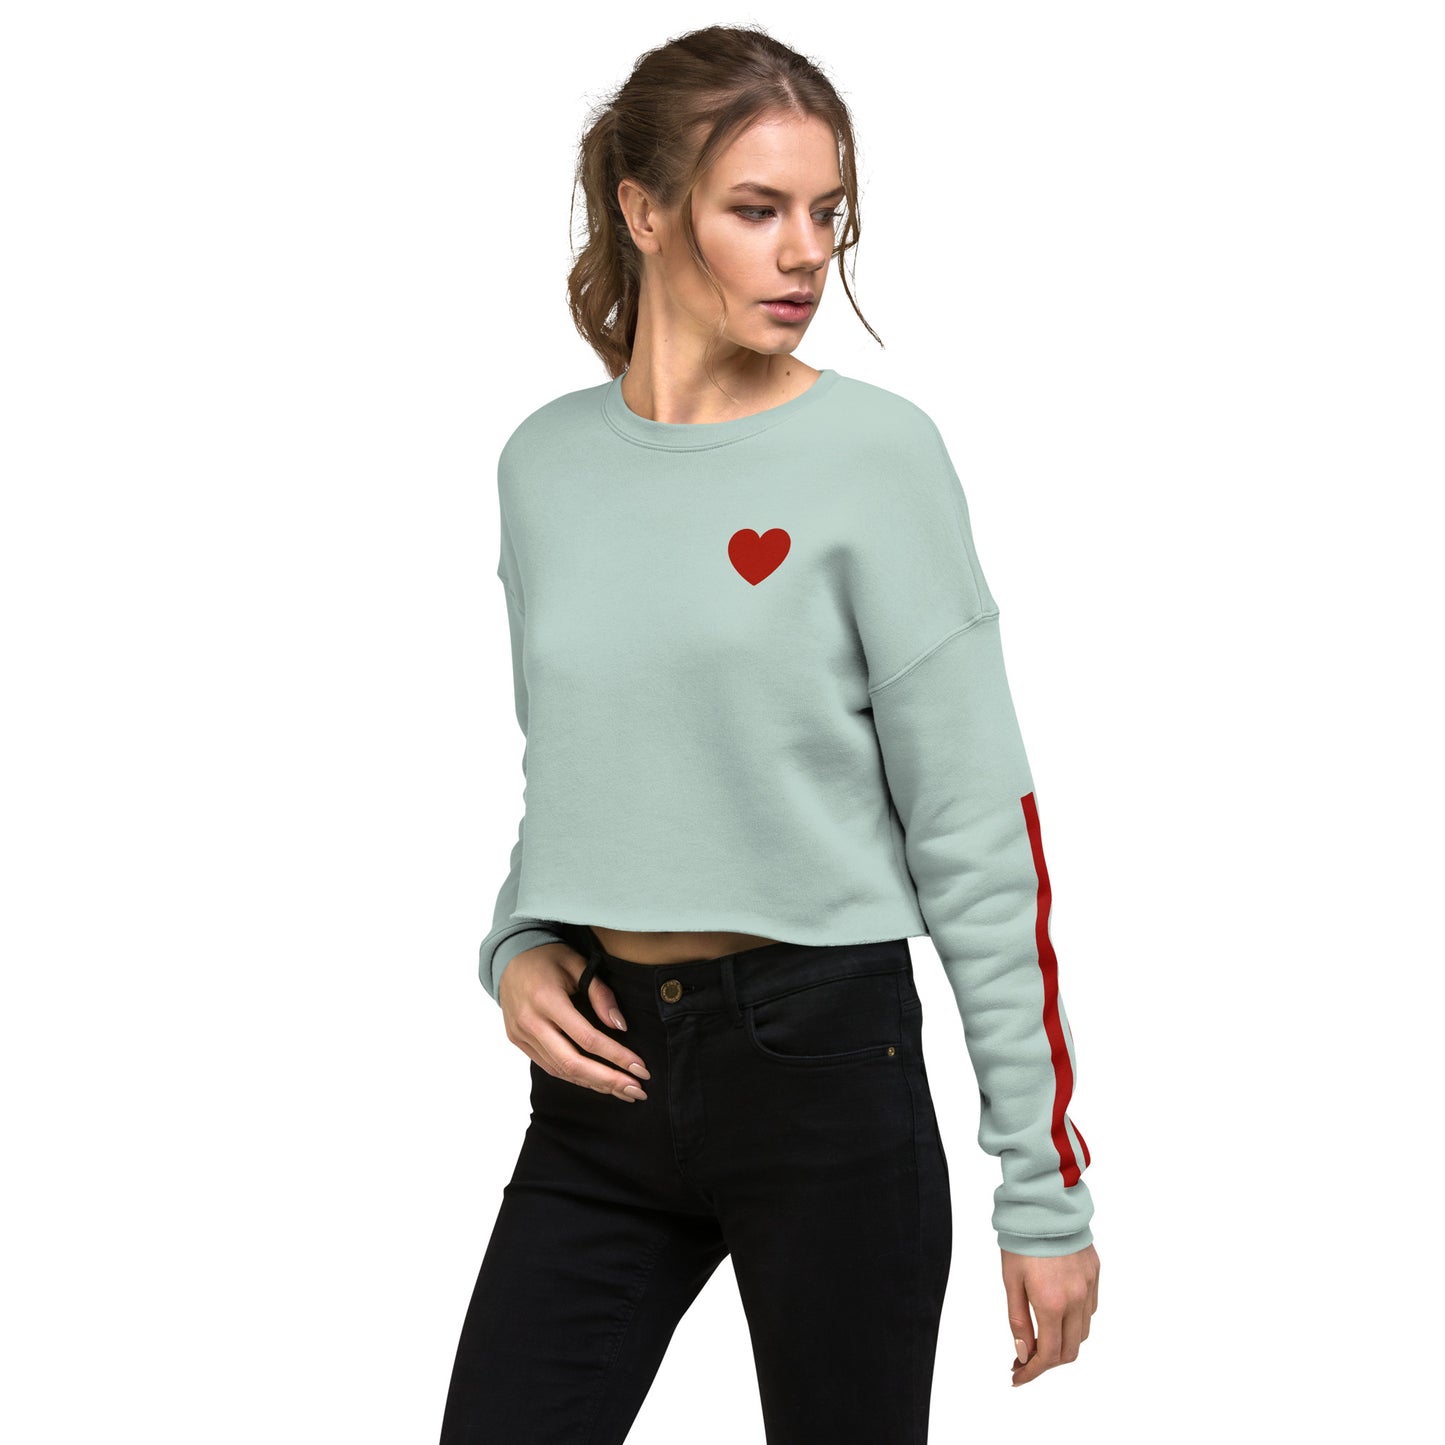 Snooty Fox Art Crop Sweatshirt - Heart